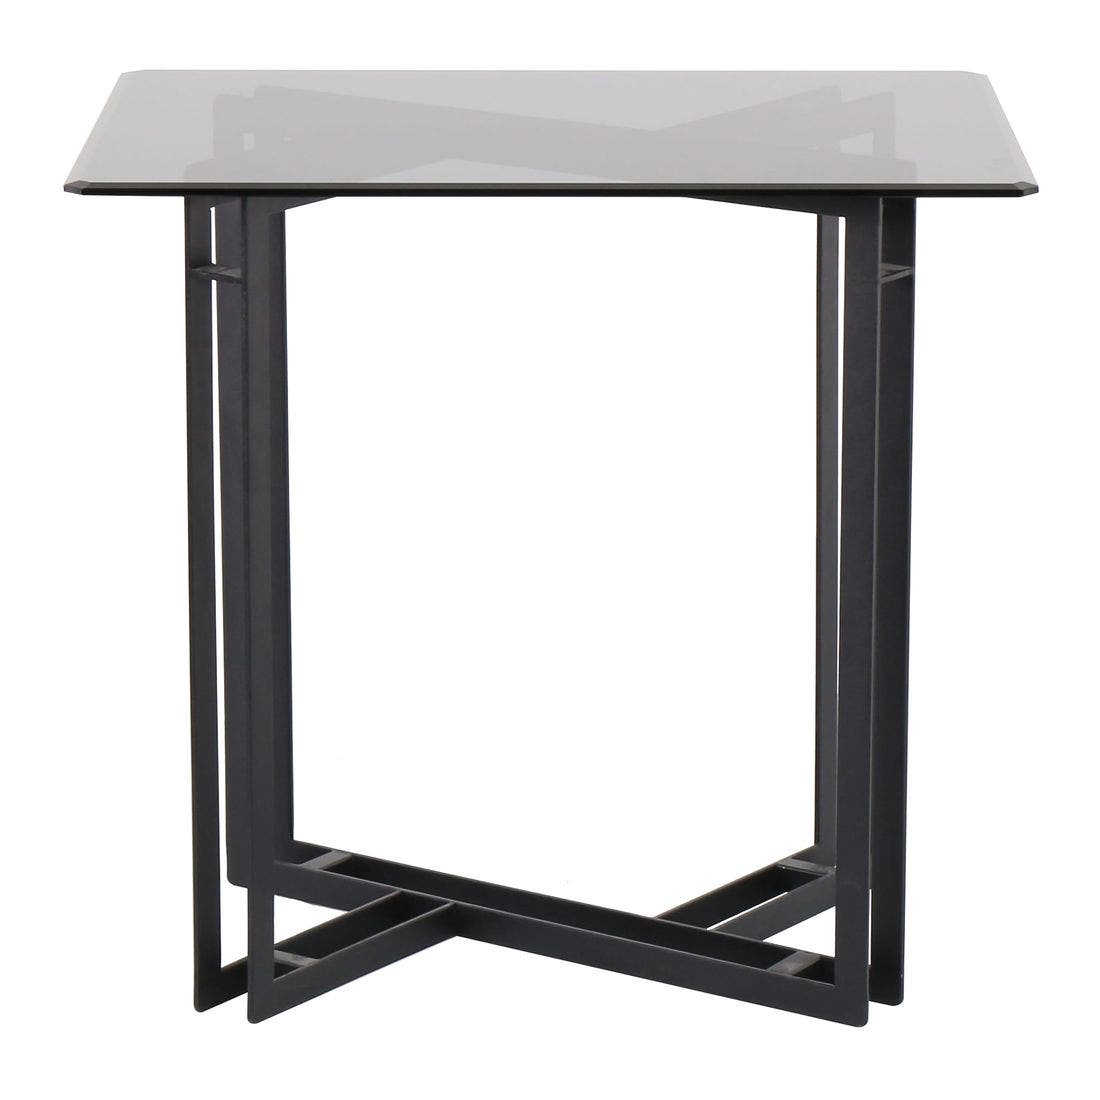 โต๊ะทานอาหาร โต๊ะอาหารขาเหล็กท๊อปกระจก รุ่น Vitolaสีดำ-SB Design Square